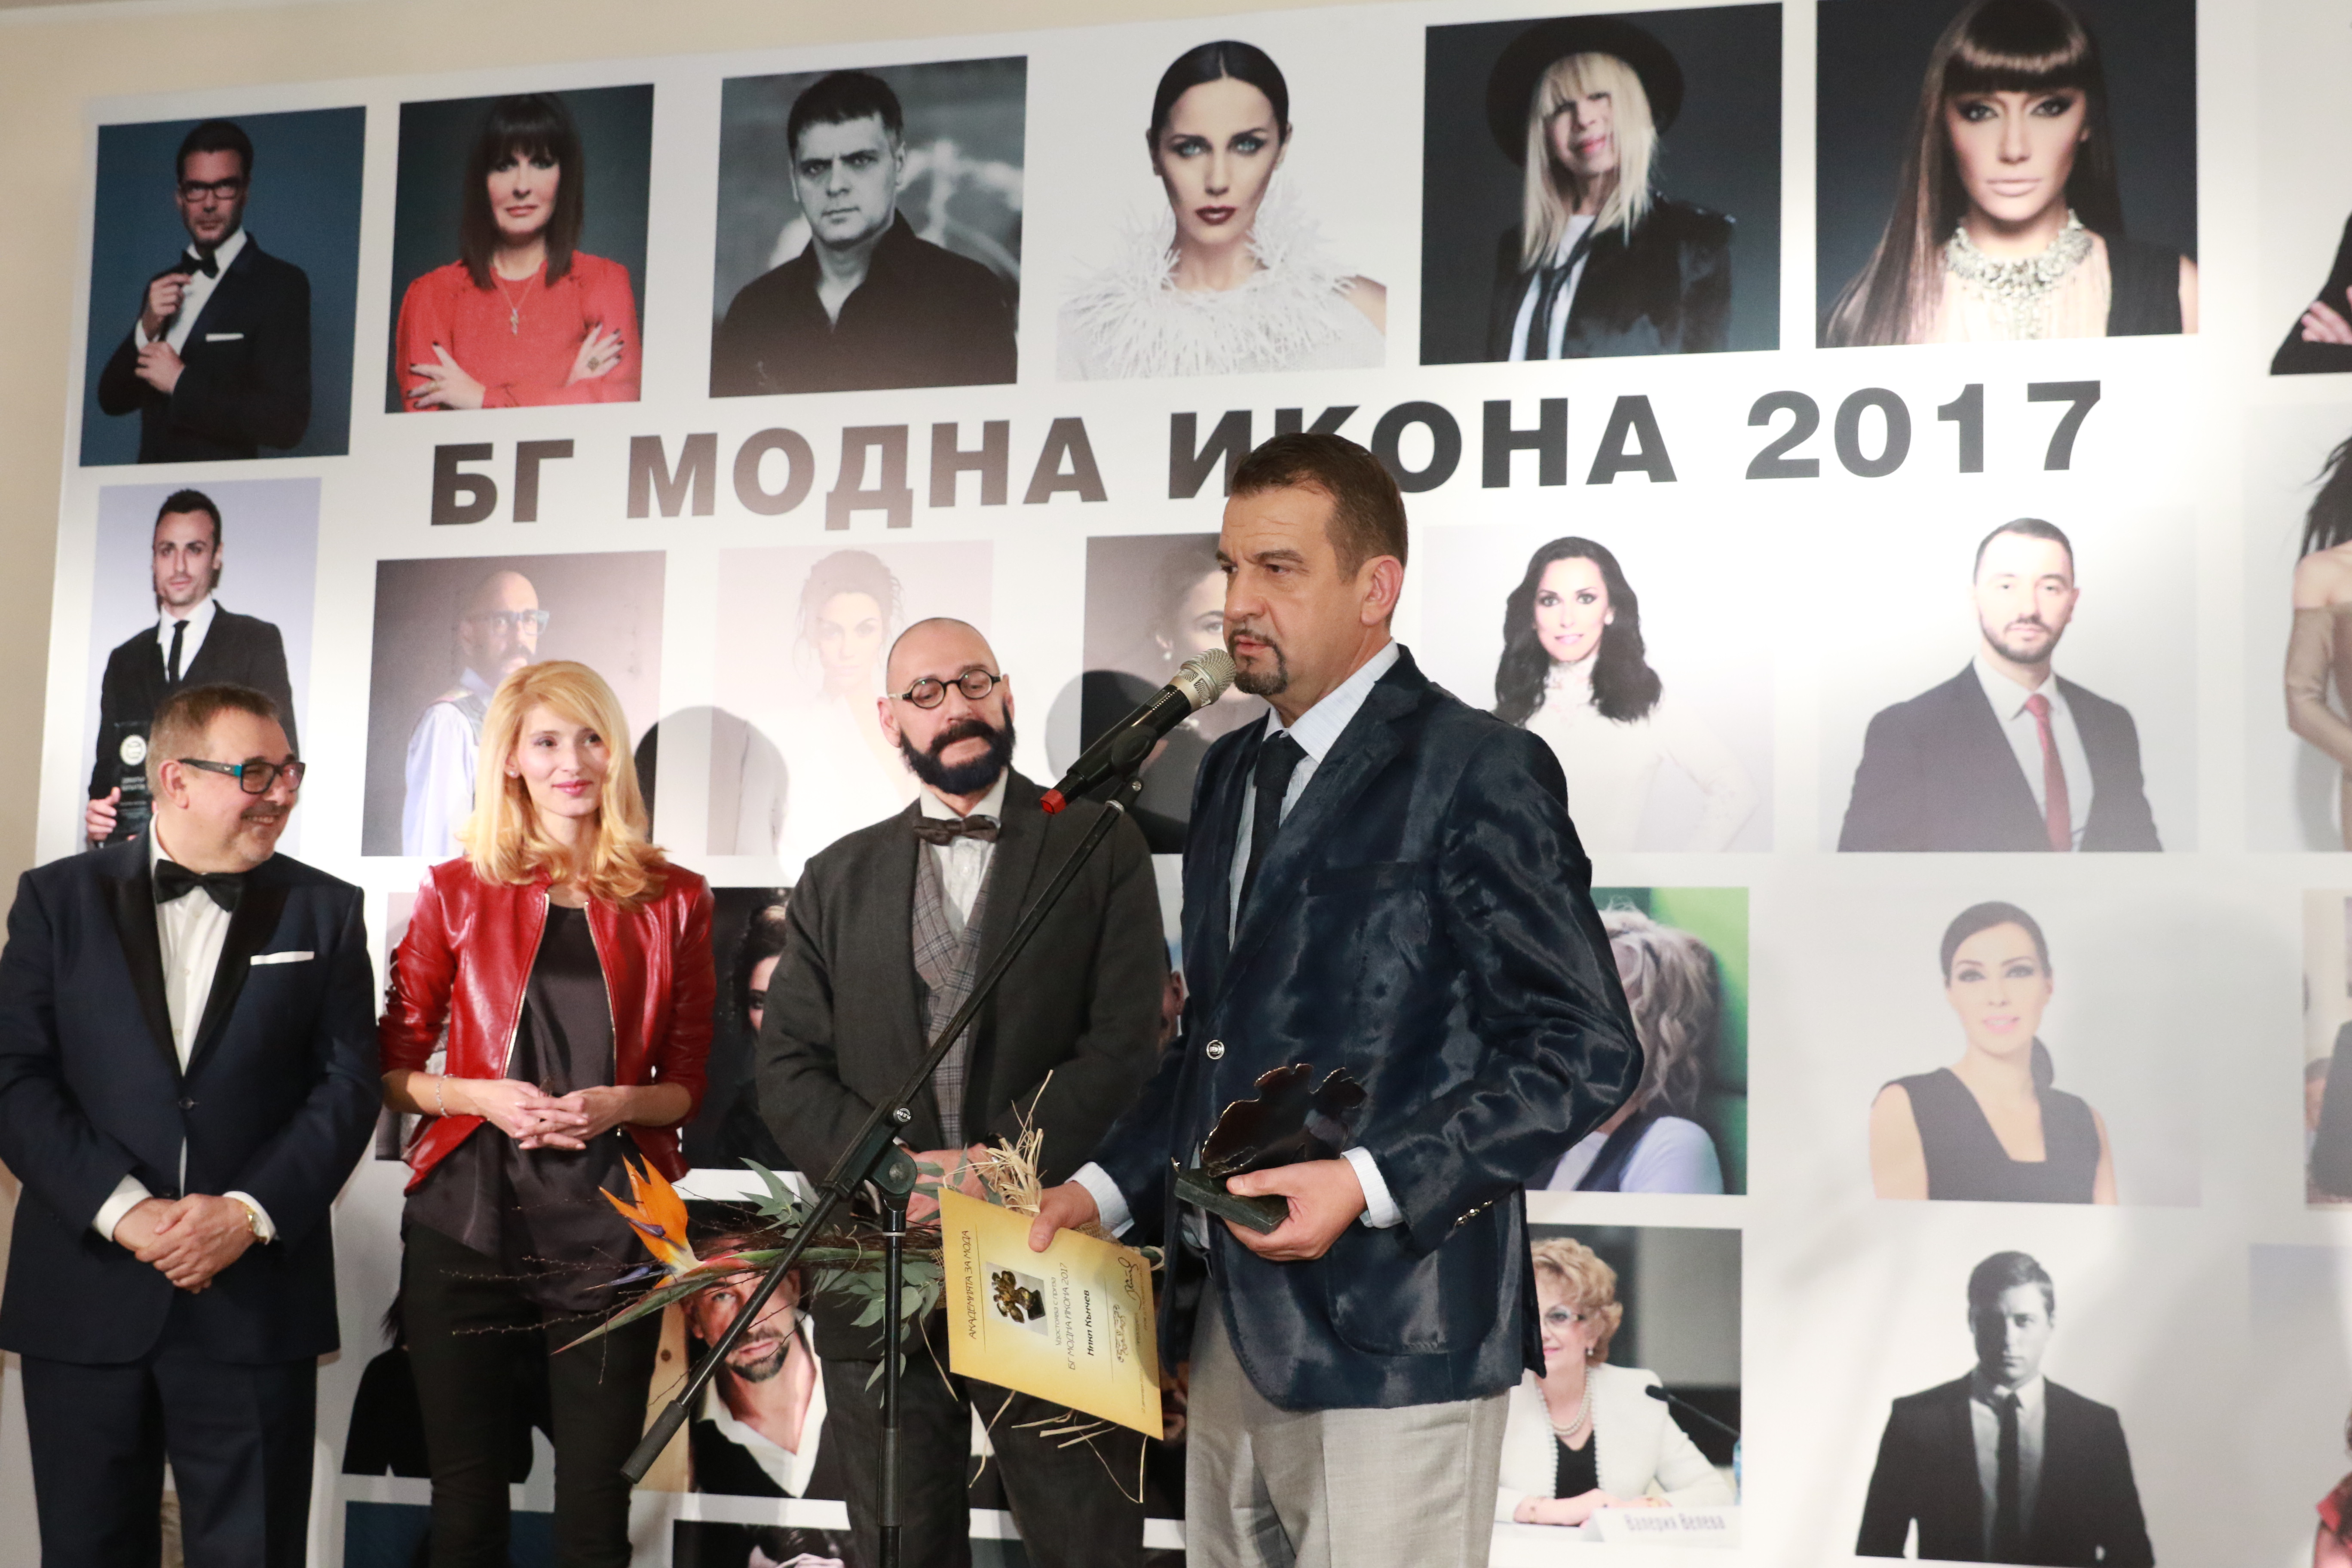 Ники Кънчев също бе отличен с приза "БГ модна икона".